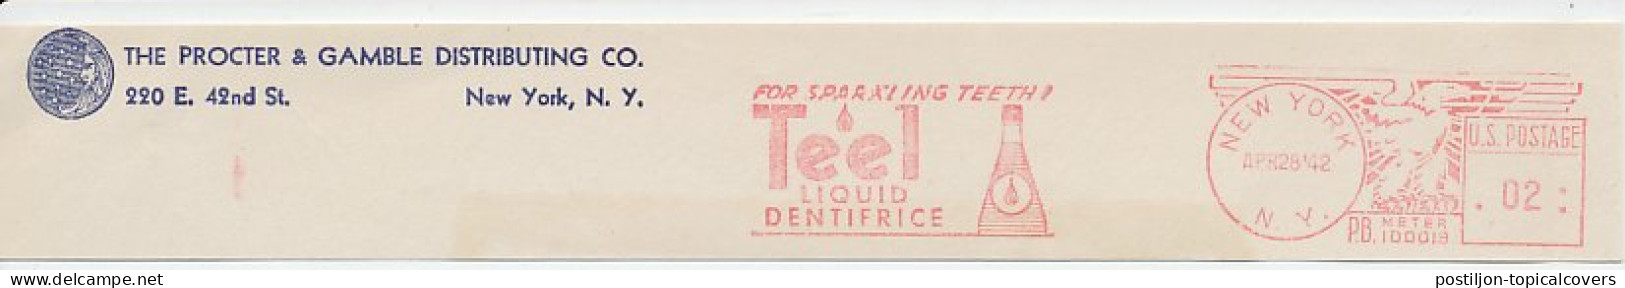 Meter Top Cut USA 1942 Liquid Dentifrice - Teel - Medicine